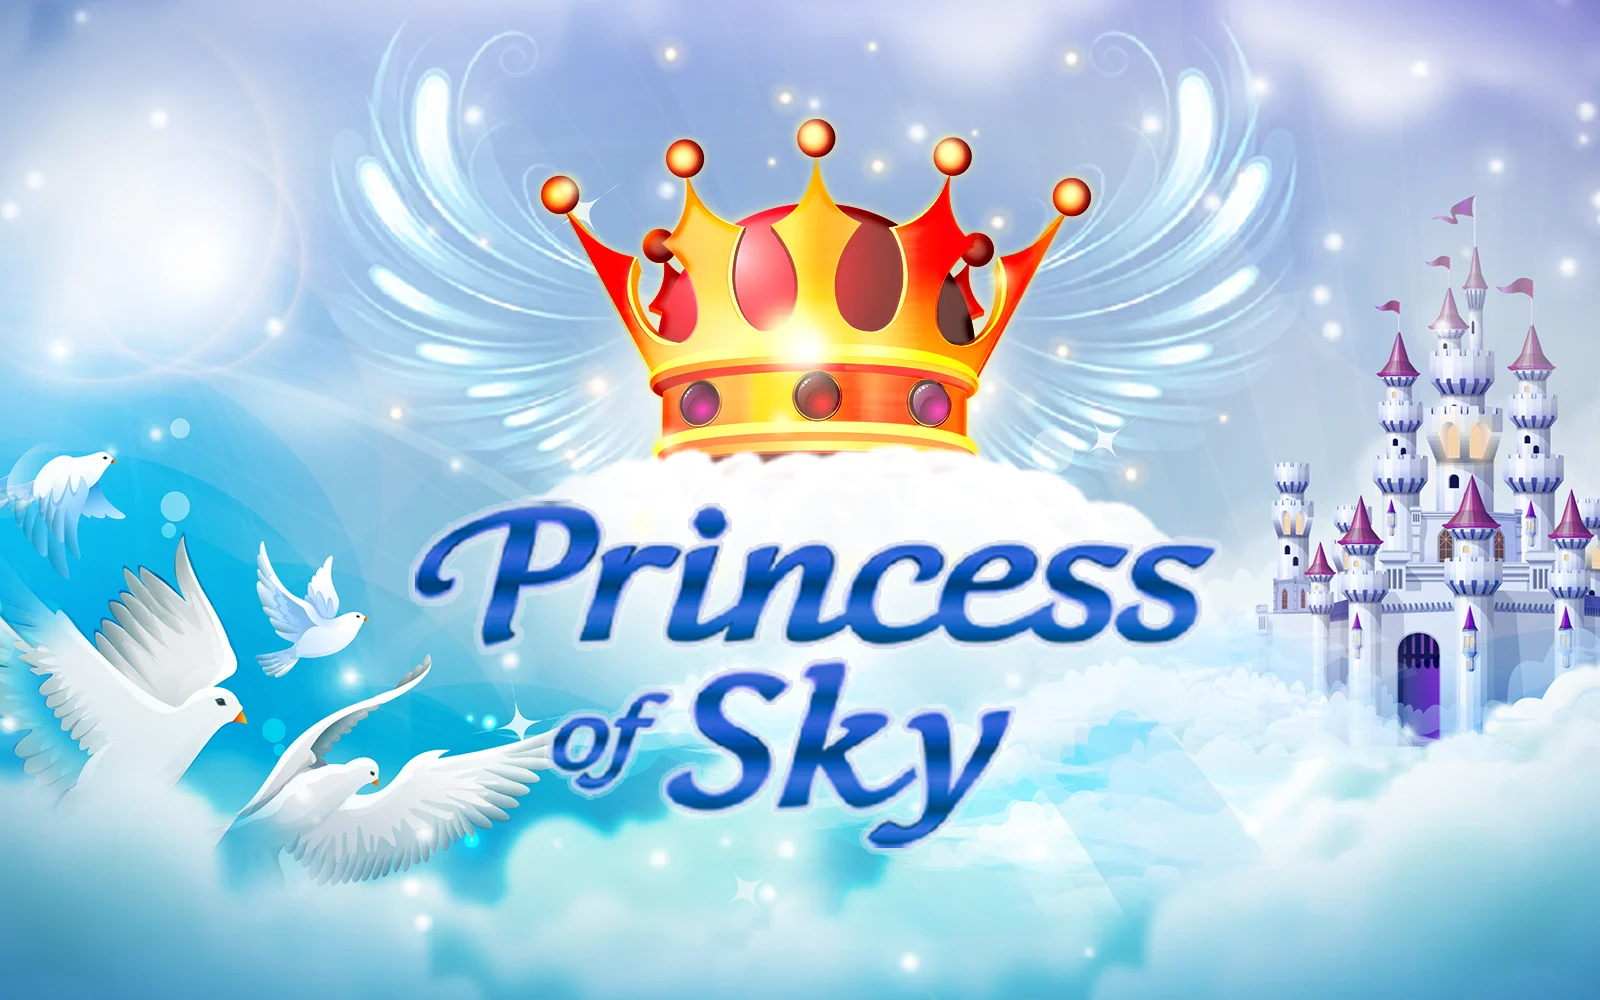 Play Princess of Sky on Starcasino.be online casino